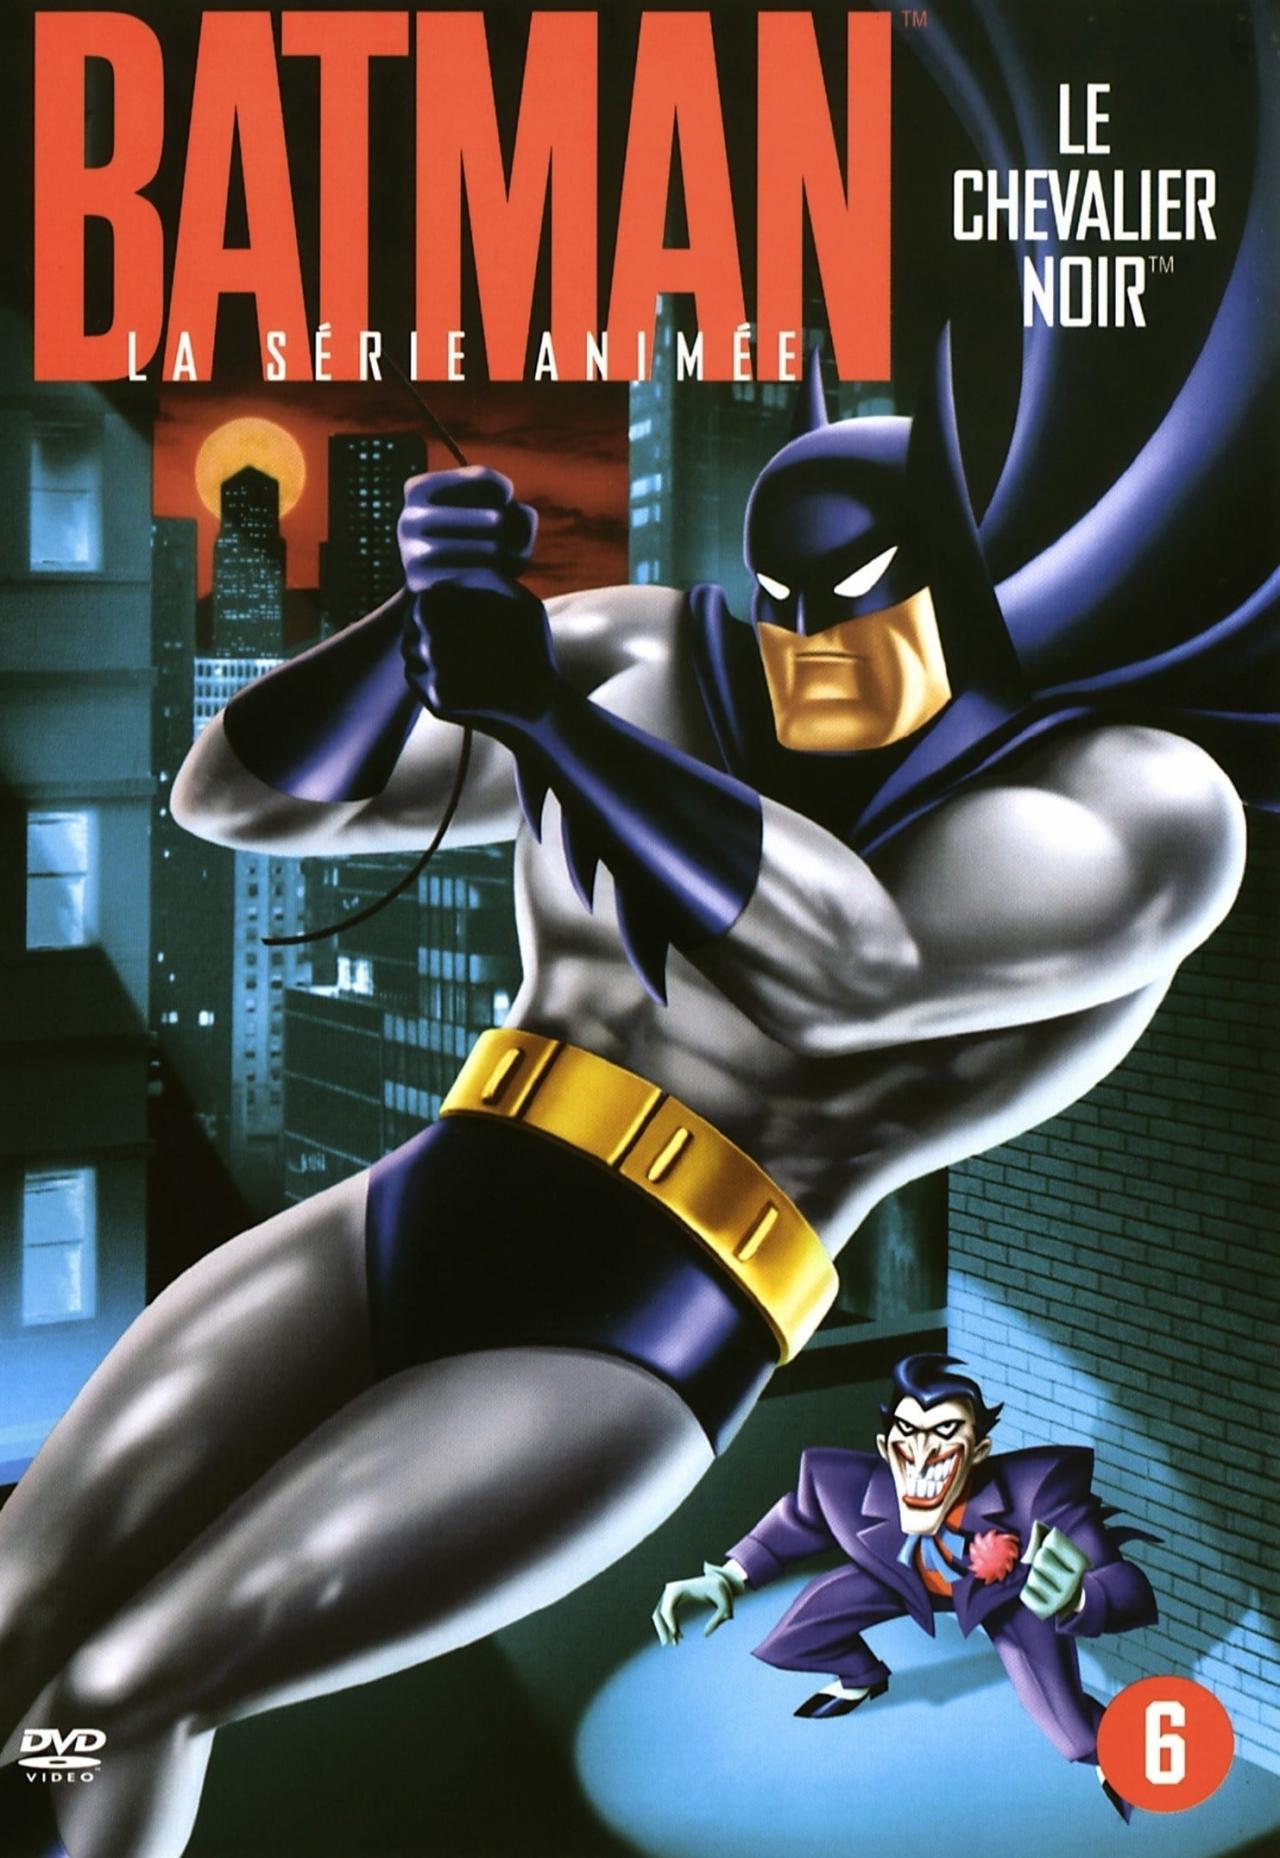 Affiche de la série Batman : La Série animée